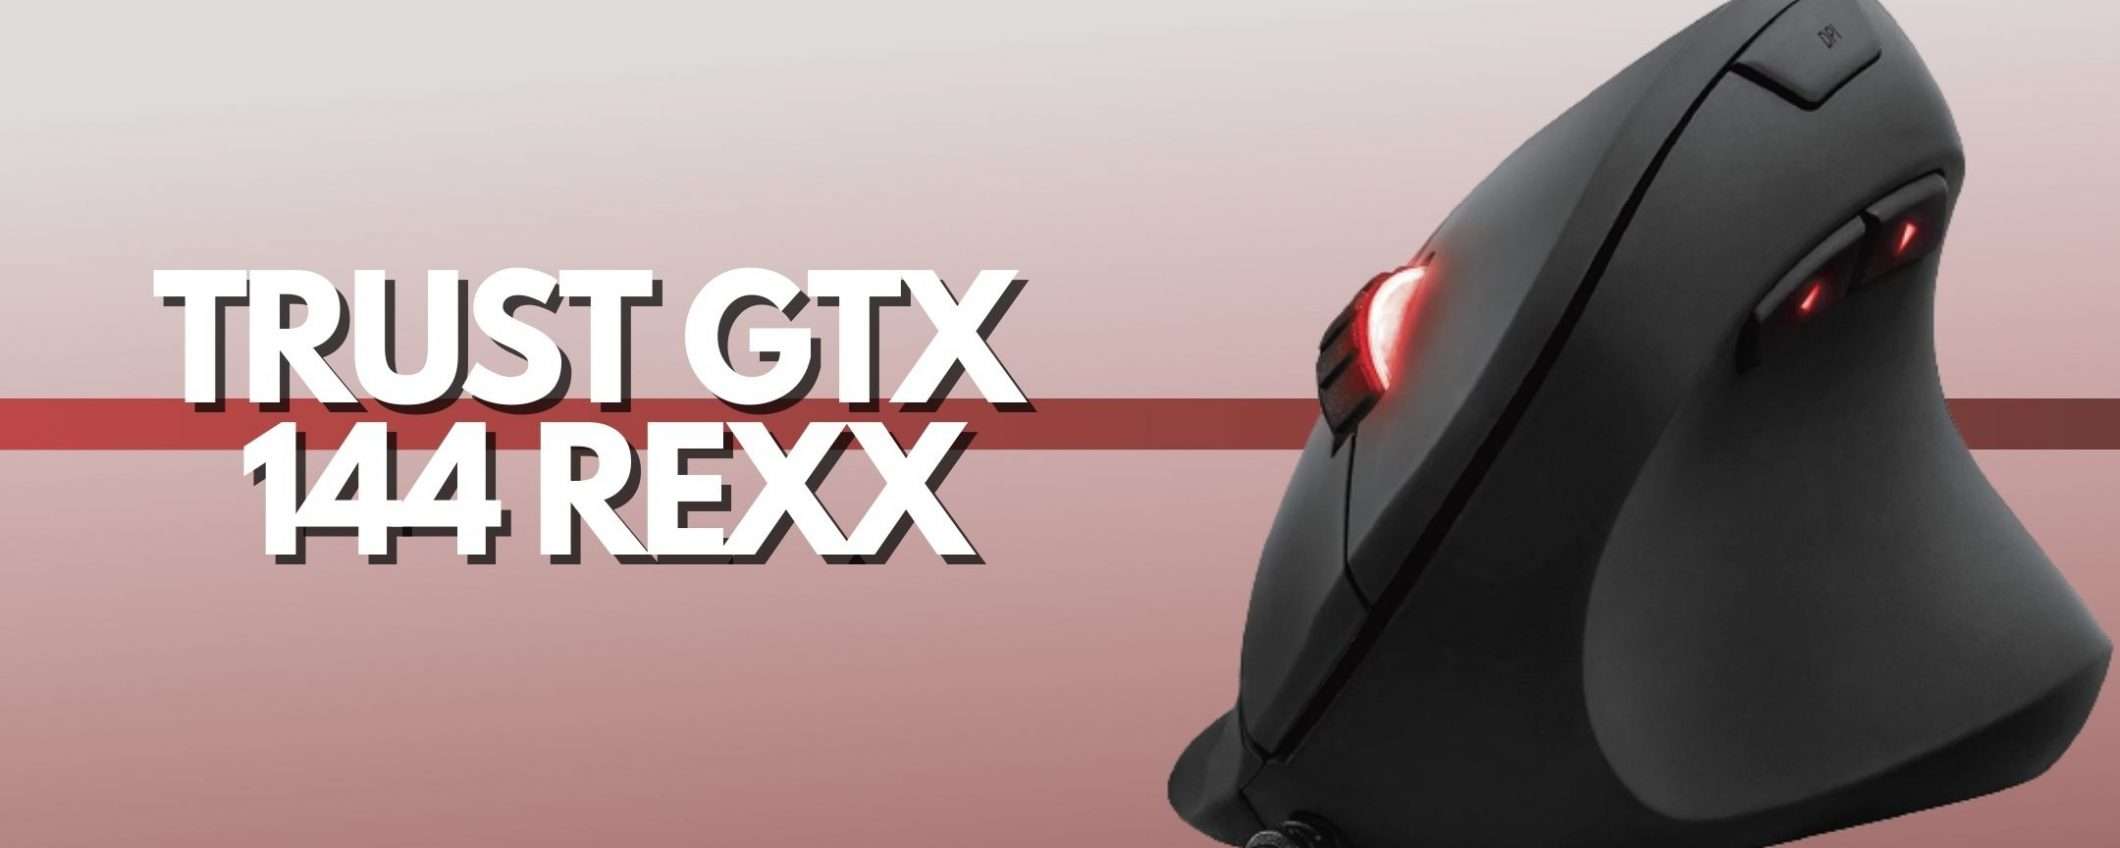 Trust GTX 144 Rexx: il mouse verticale che stavi cercando